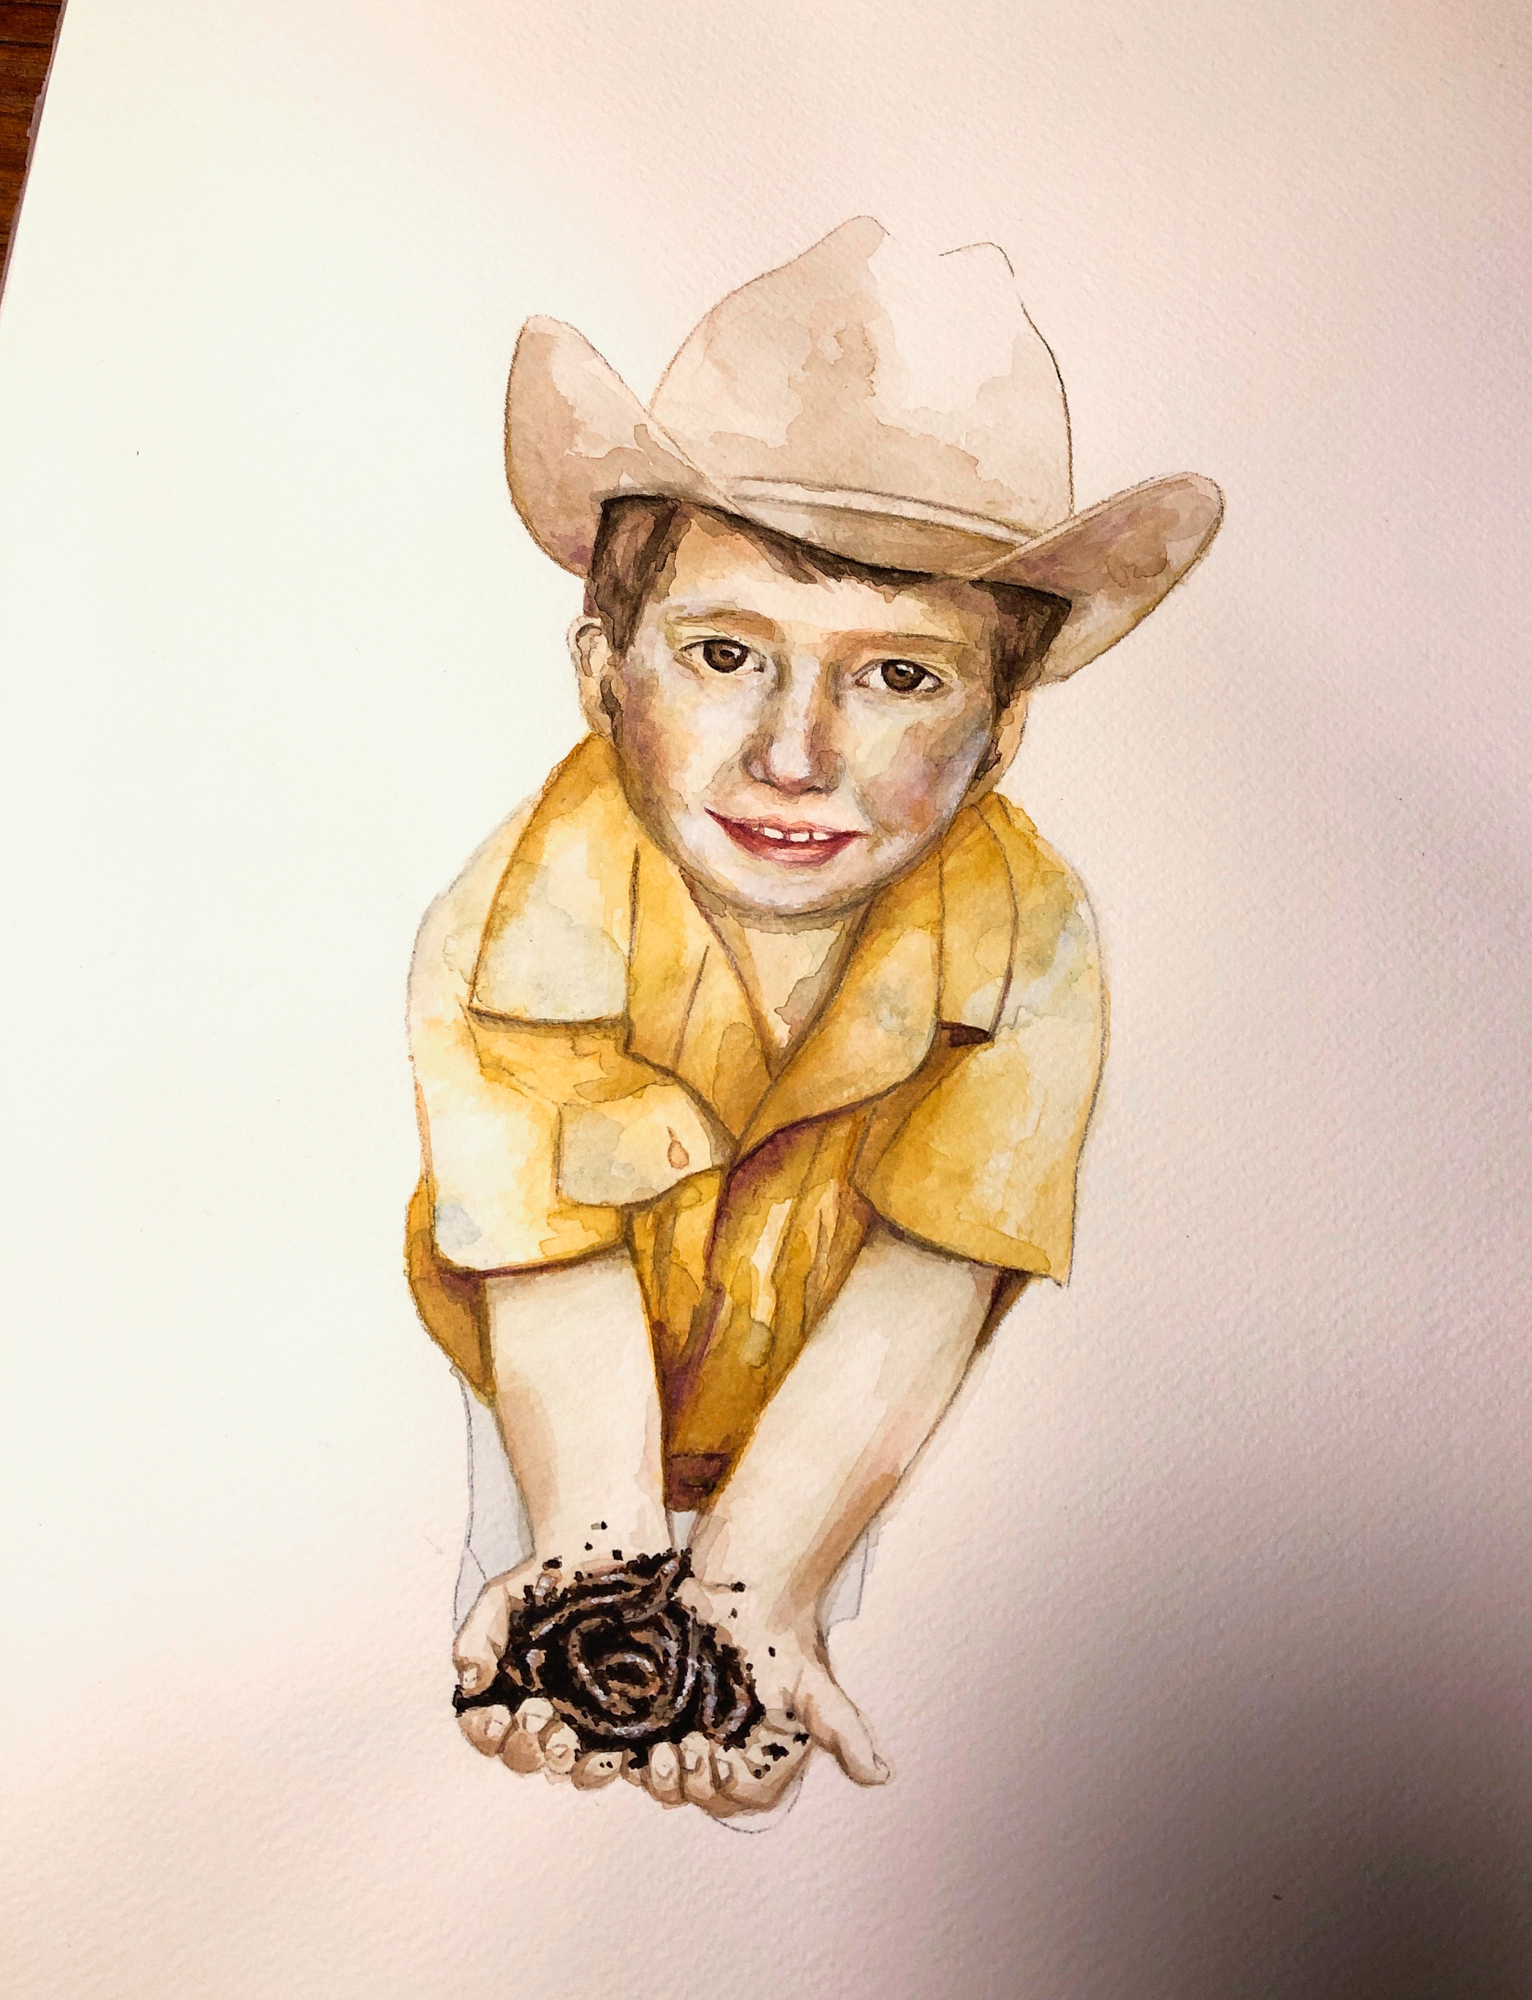 Zu sehen ist ein Aquarell-Porträt eines kleinenJungen mit Cowboyhut und gelben Hemd. Erhält Regenwürmer in den Händen und guckt den Betrachter direkt an.